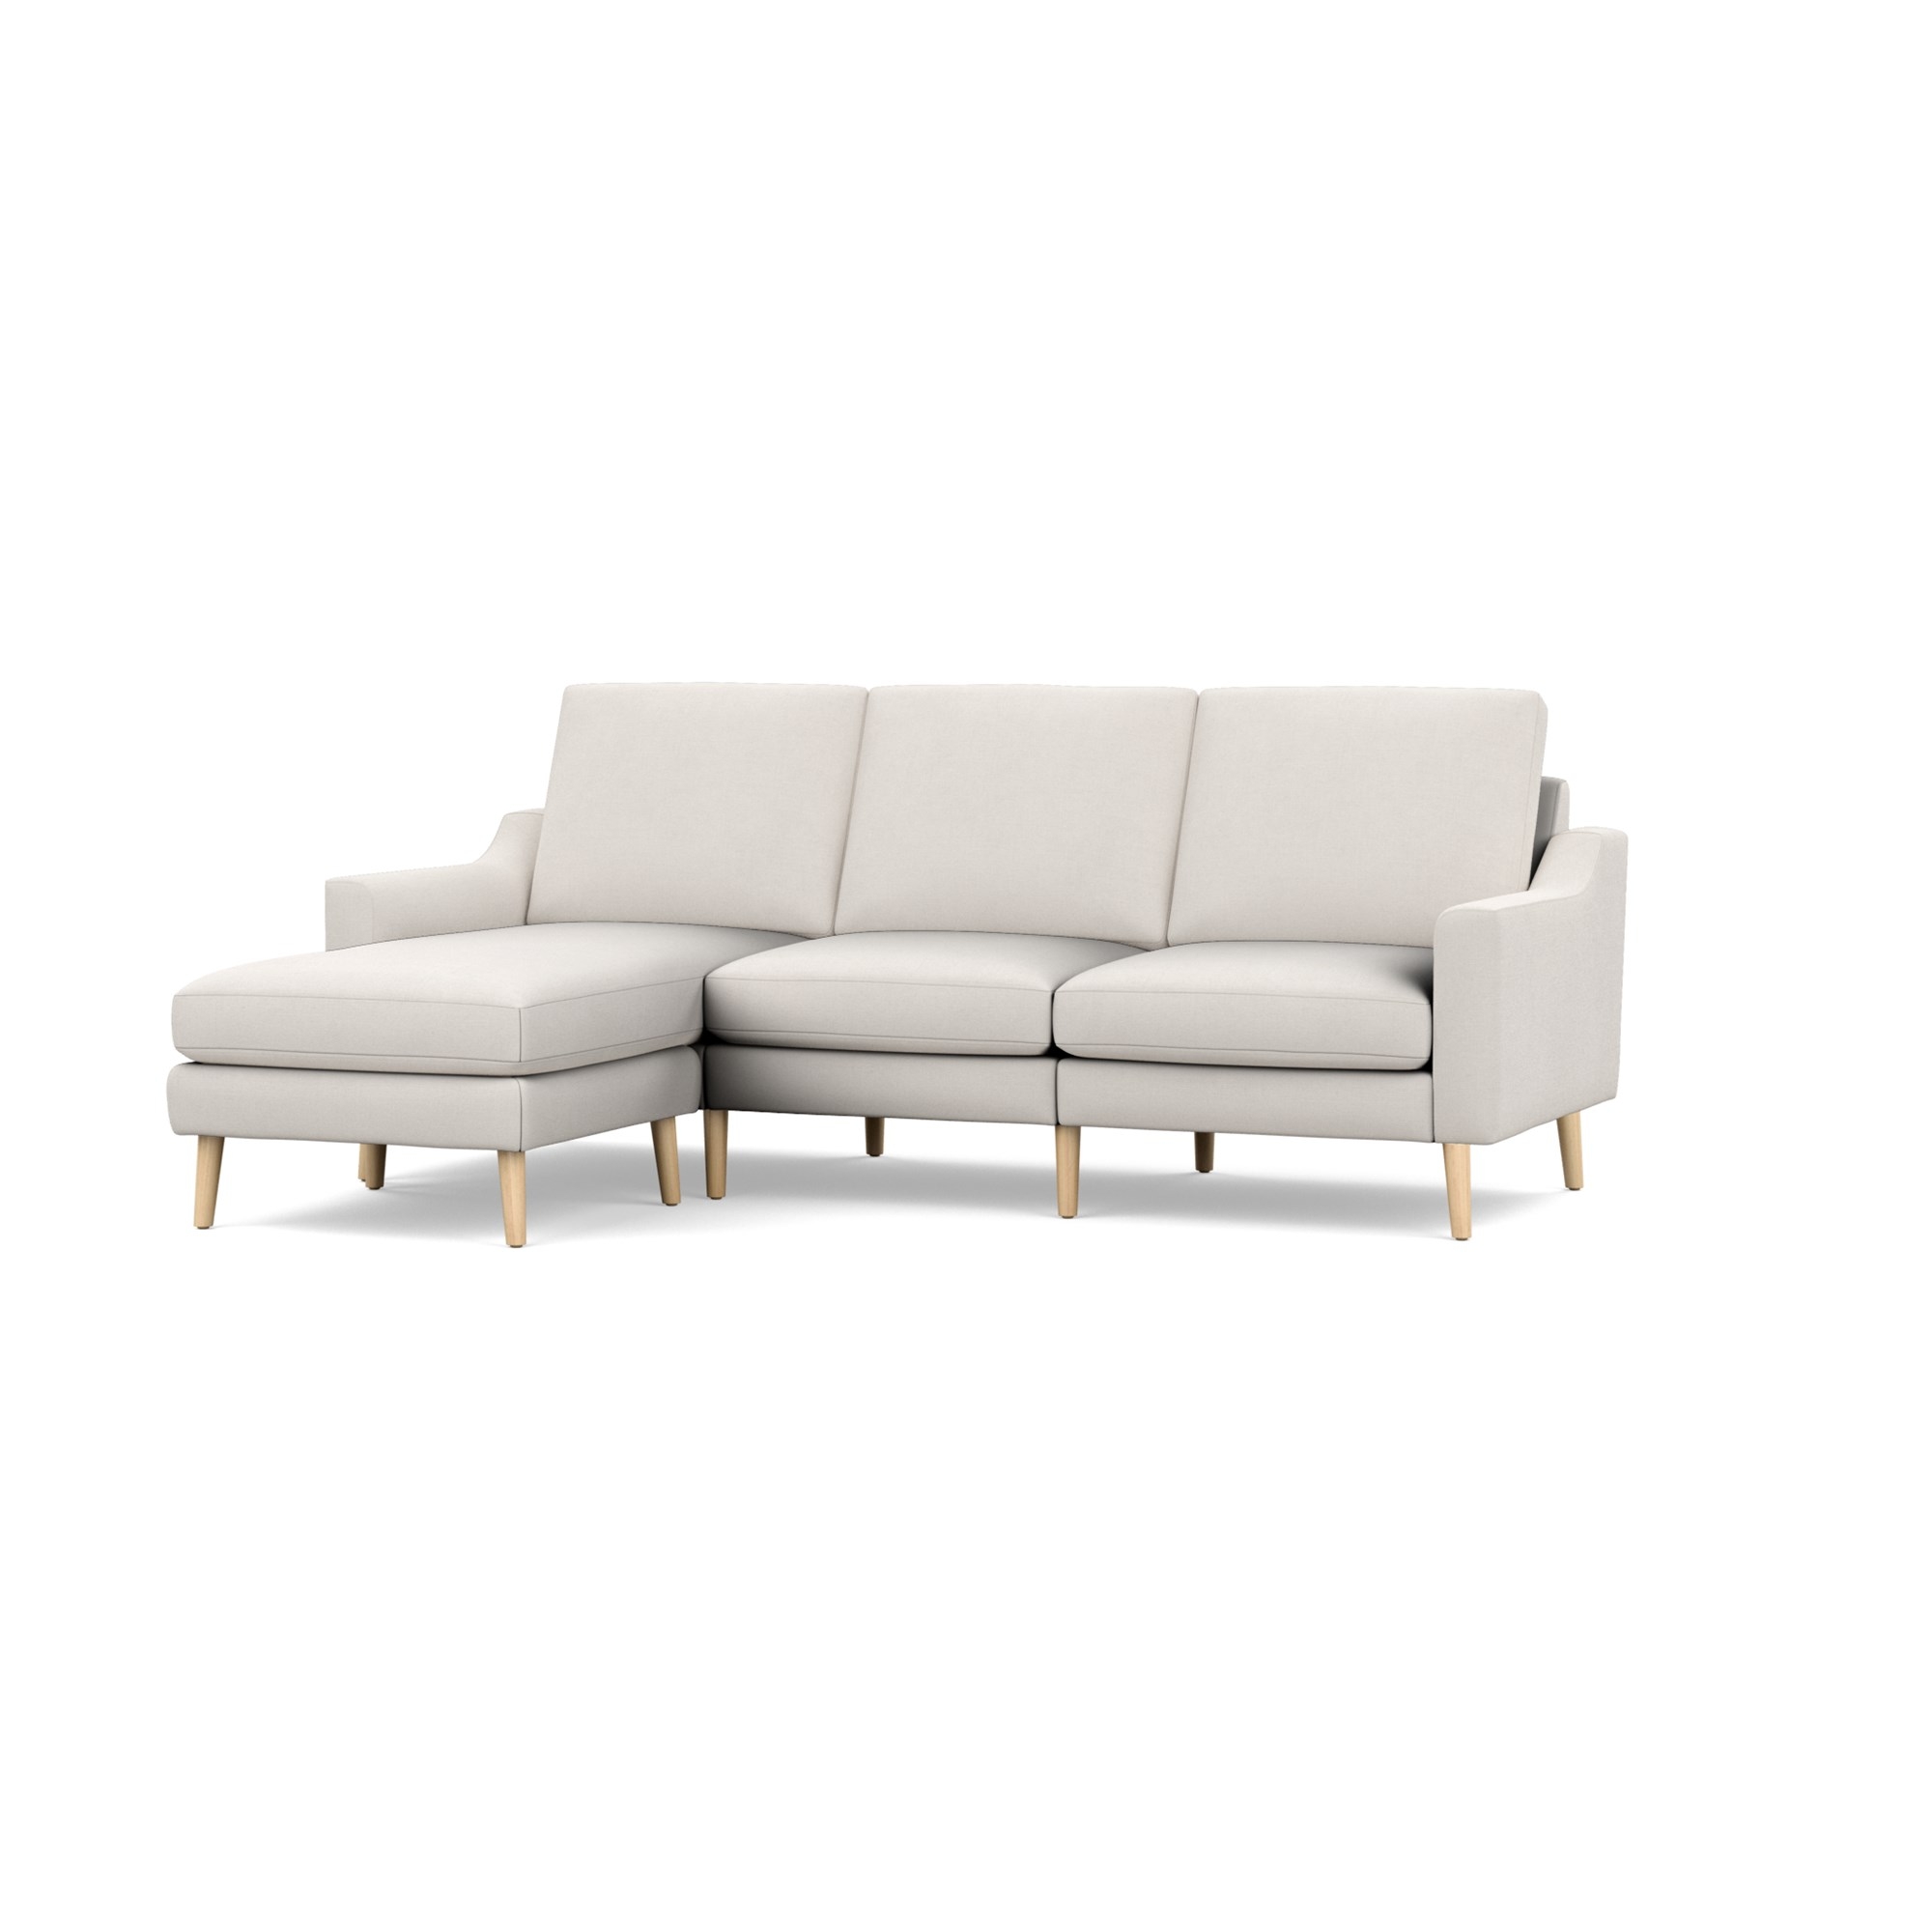 Nomad Sofa Sectional in Ivory, Leg Finish: OakLegs - Image 0